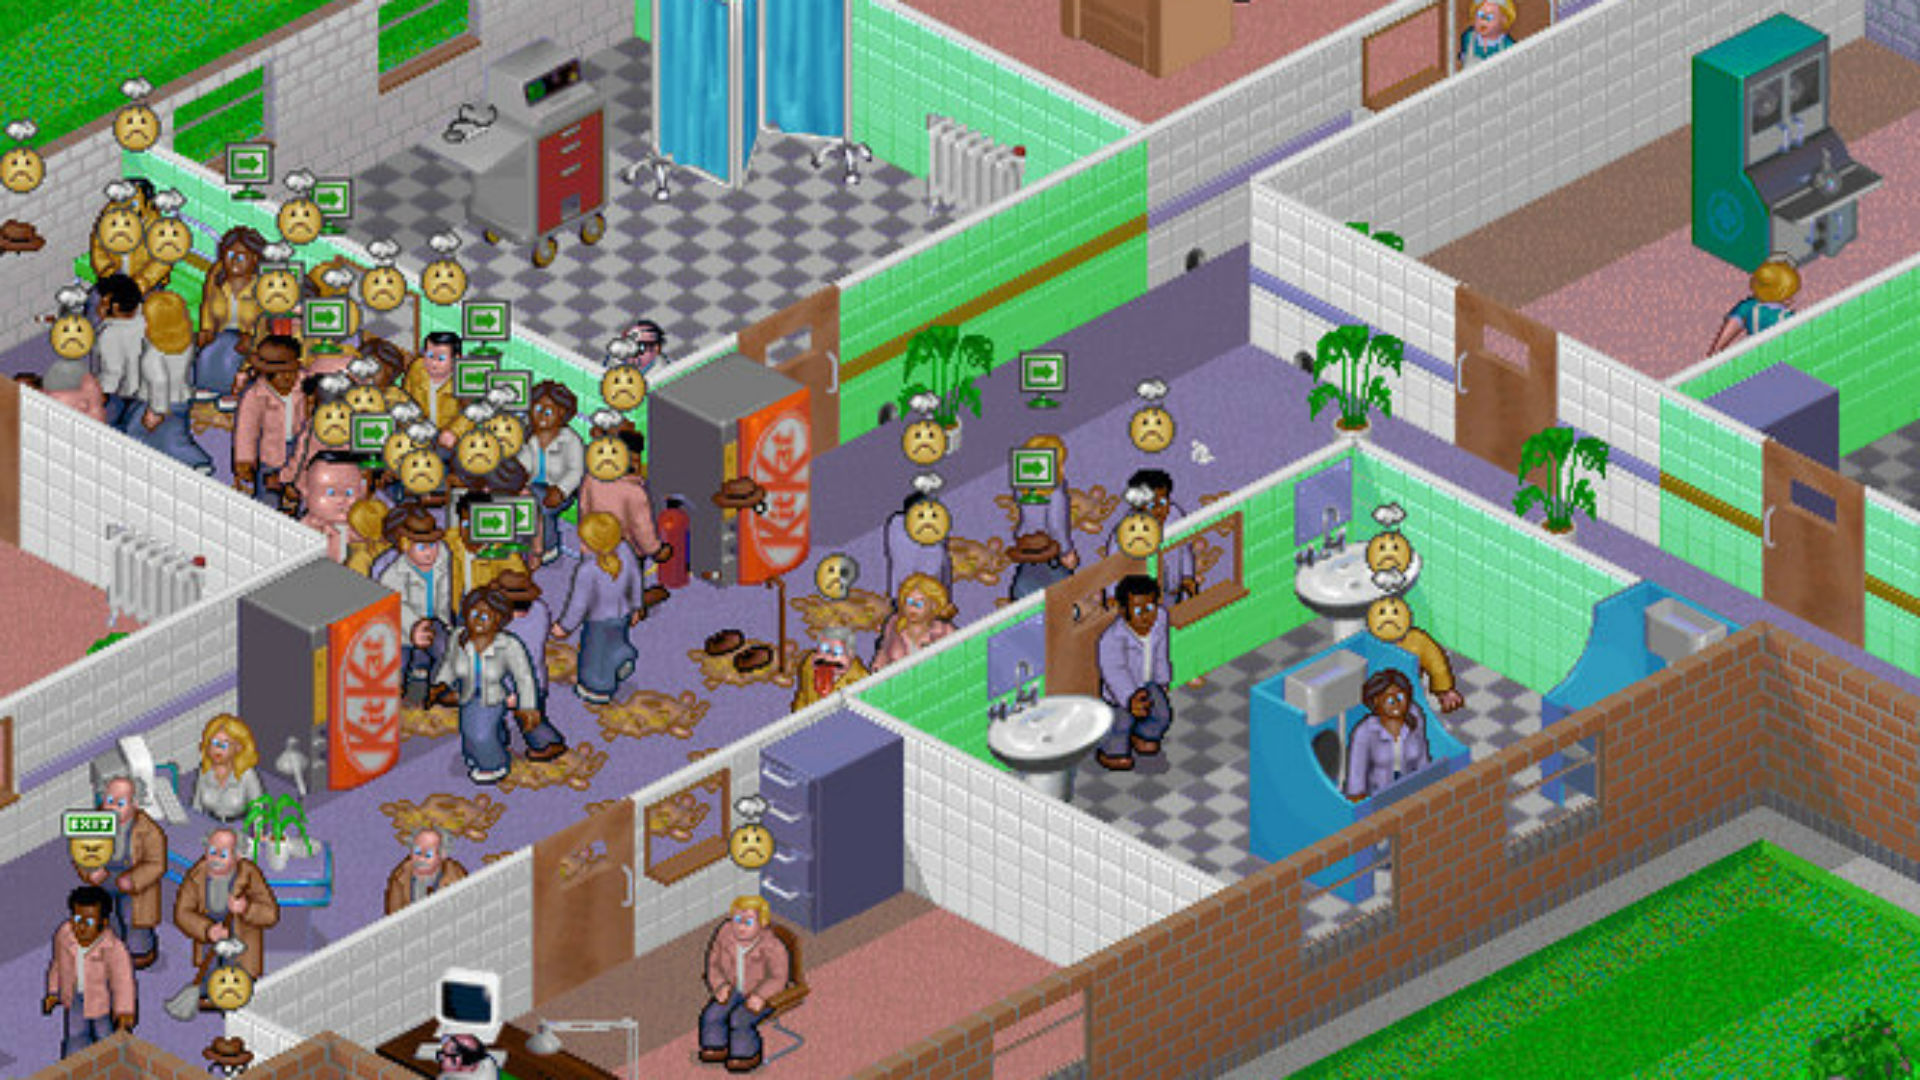 Mai mulți pacienți se acumulează pe un coridor din spitalul tematic, unul dintre cele mai bune jocuri vechi